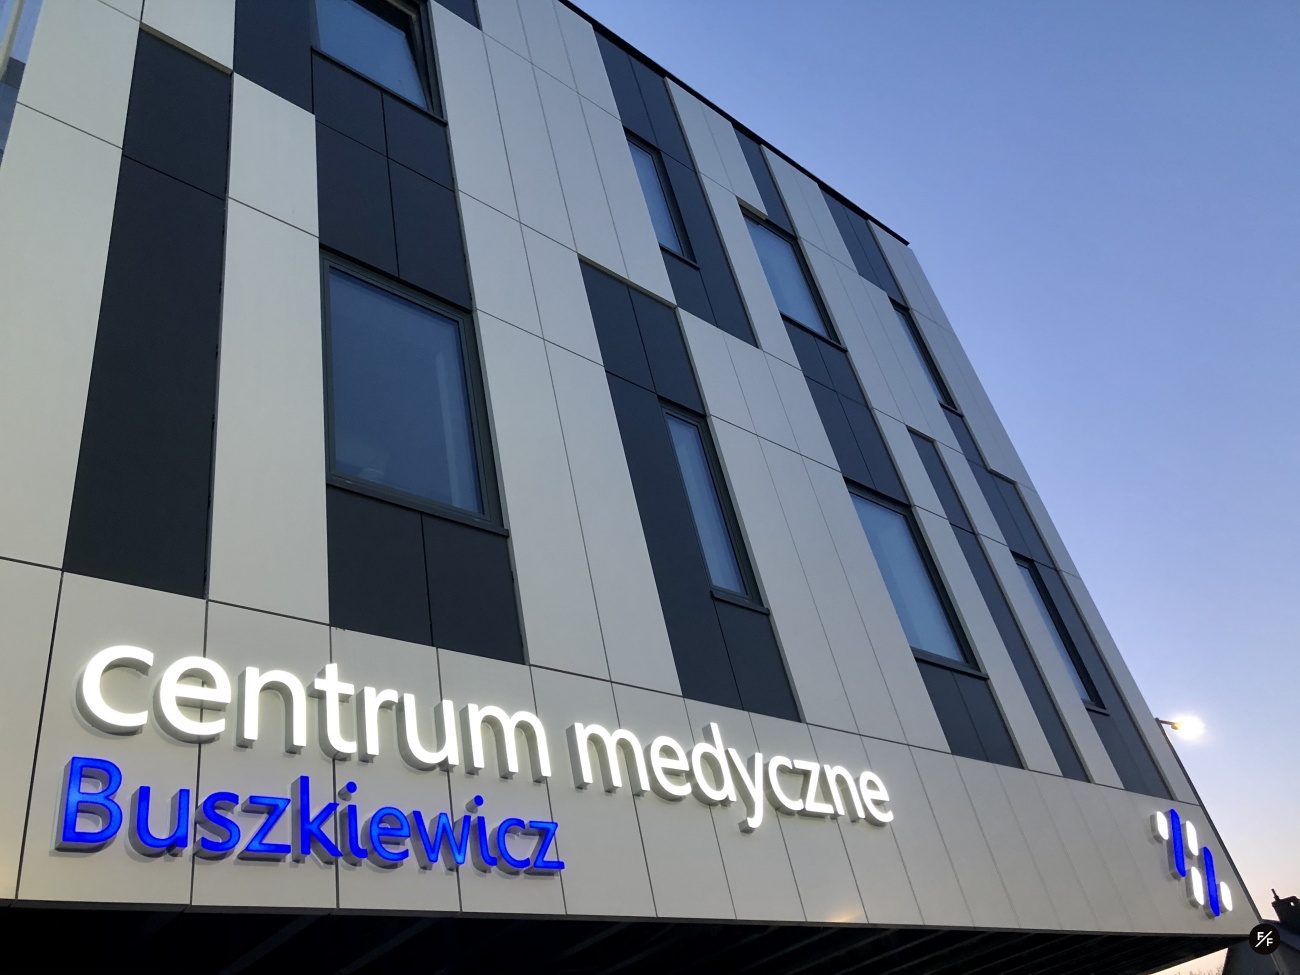 Centrum Medyczne Buszkiewicz